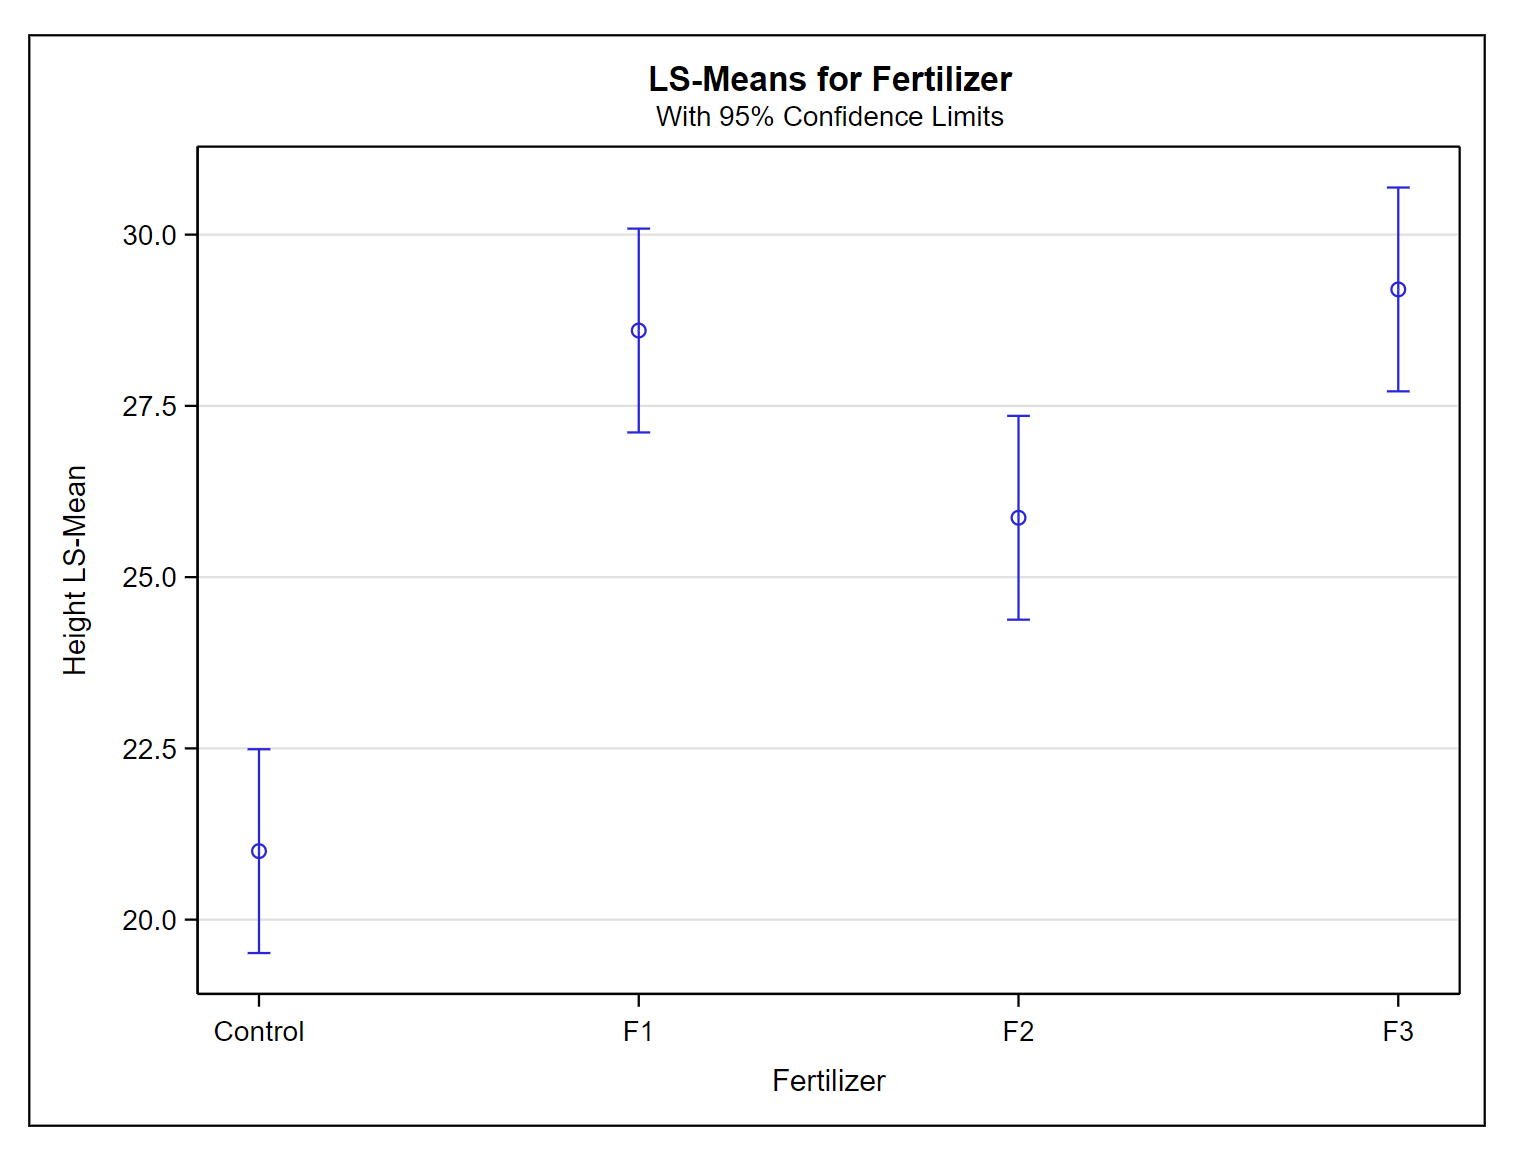 LS-Means plot for fertilizer treatments, with 95% confidence limits.